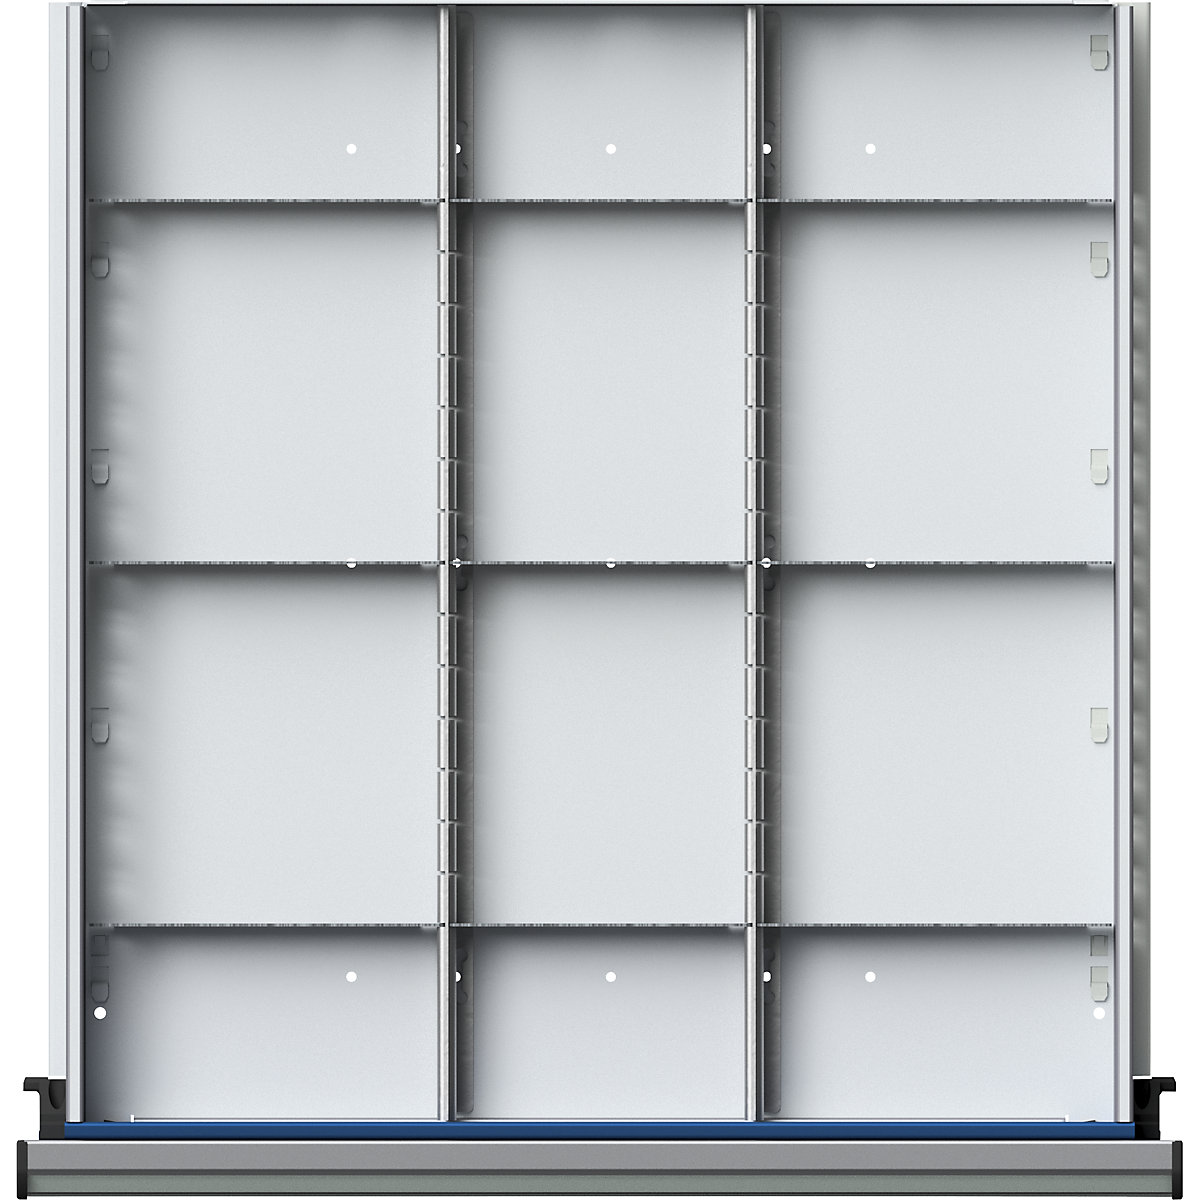 Zestaw przegród do szuflad – ANKE, 2 przegrody wzdłużne i 9 poprzecznych, wys. szuflady 180 mm